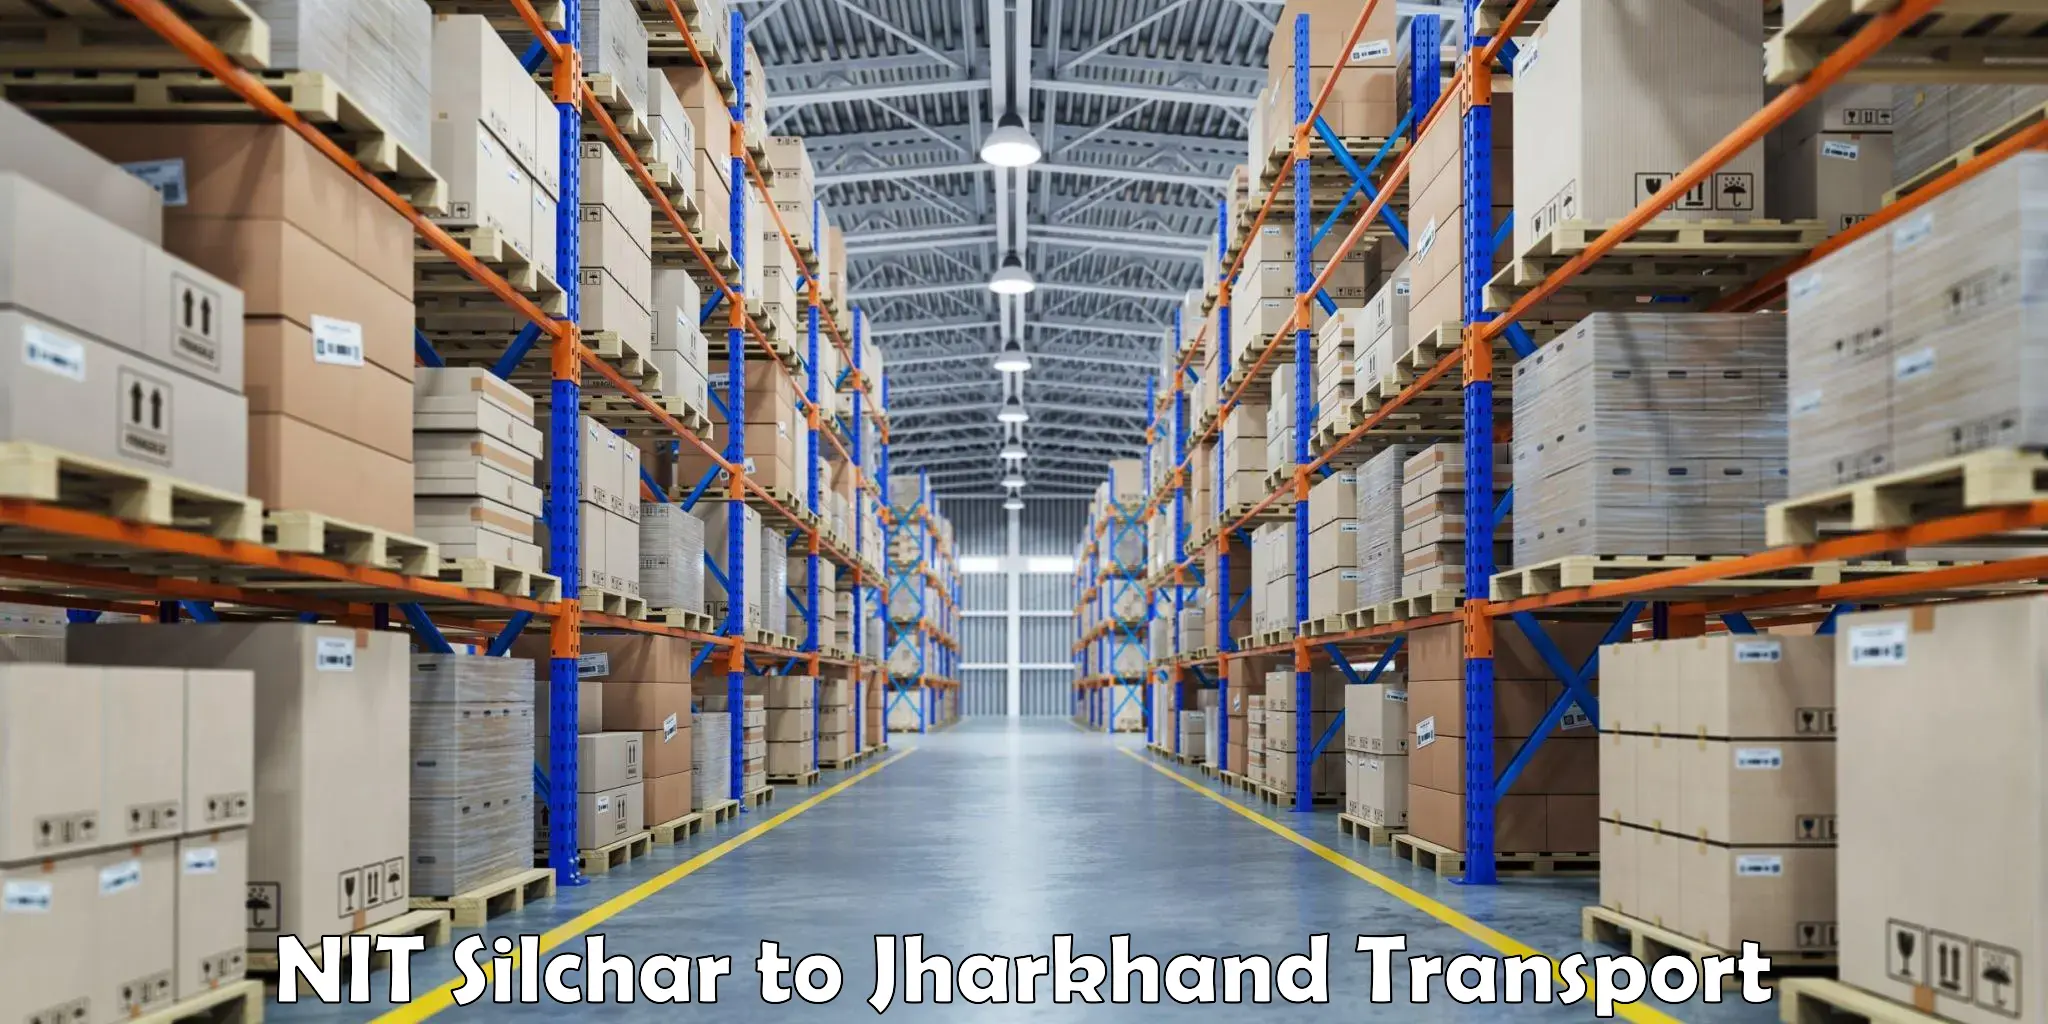 Pick up transport service NIT Silchar to Hariharganj